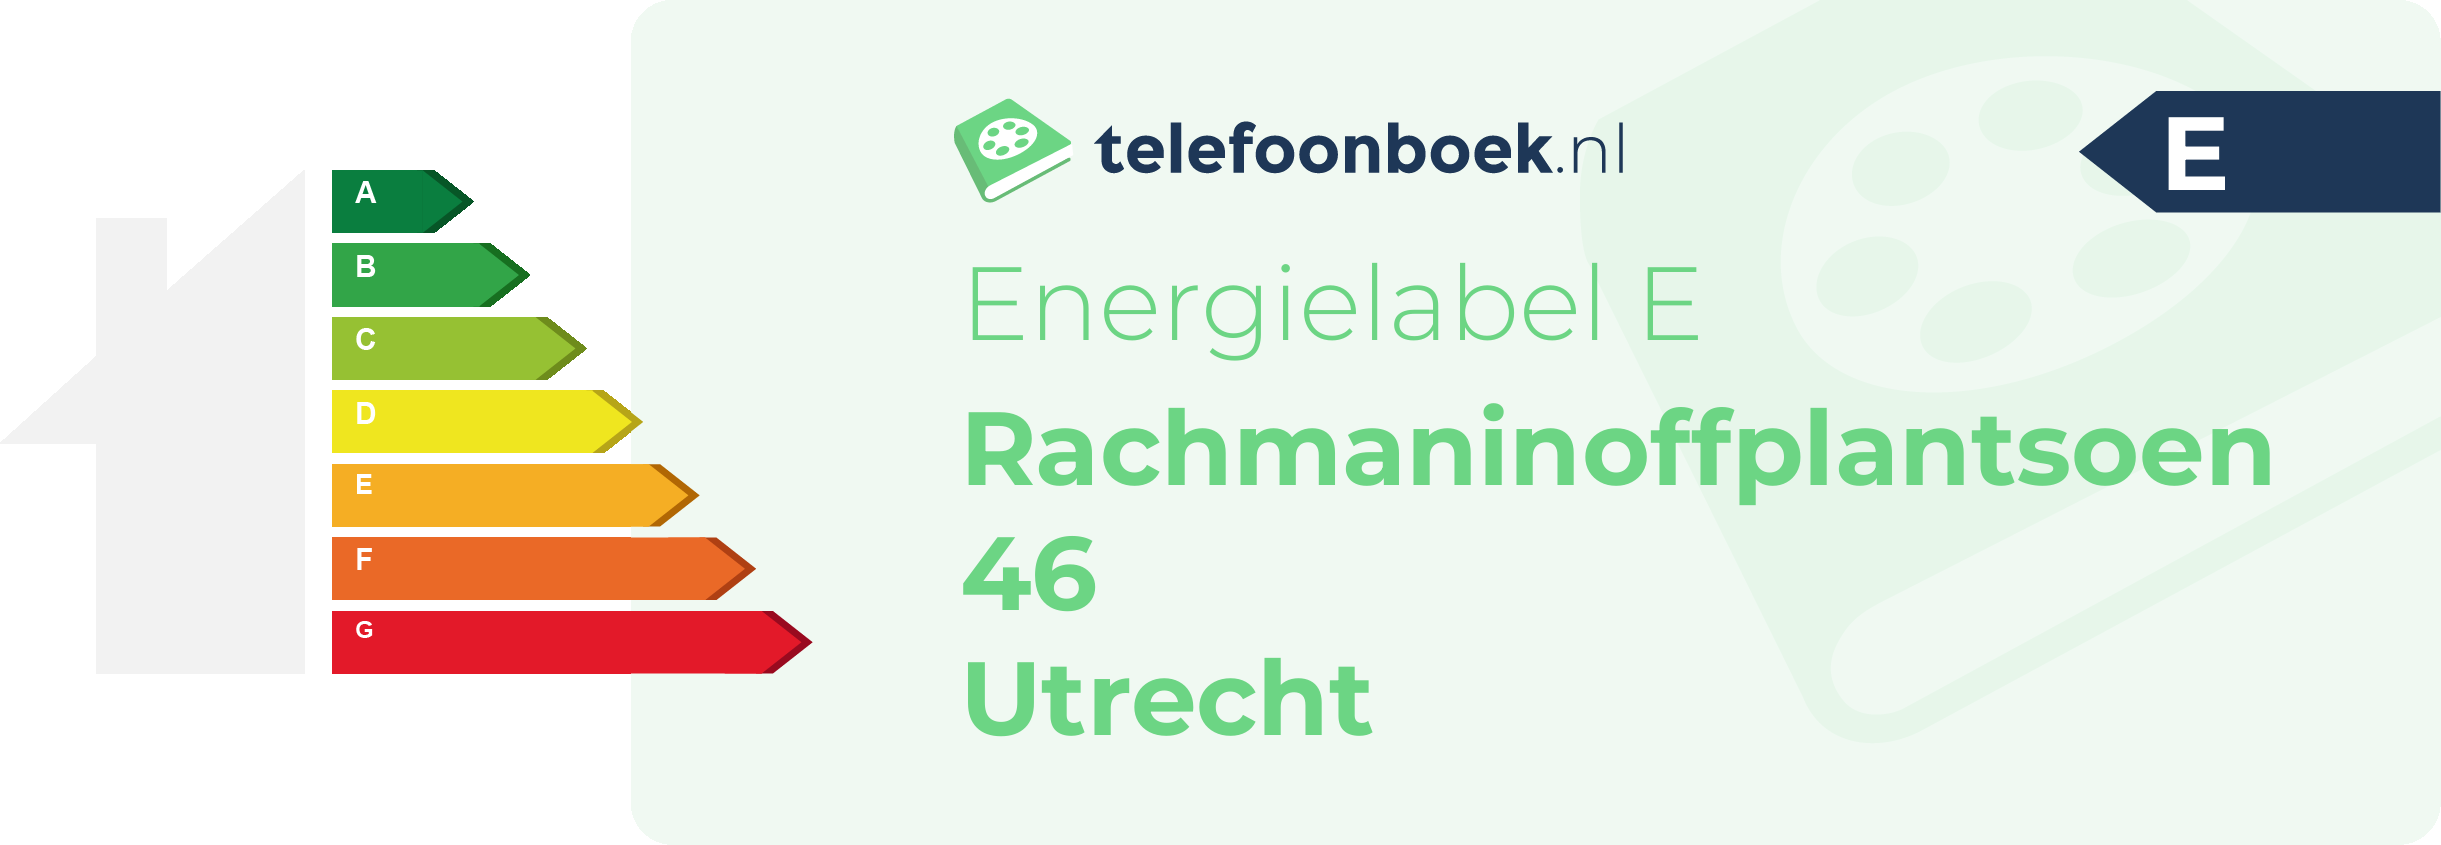 Energielabel Rachmaninoffplantsoen 46 Utrecht